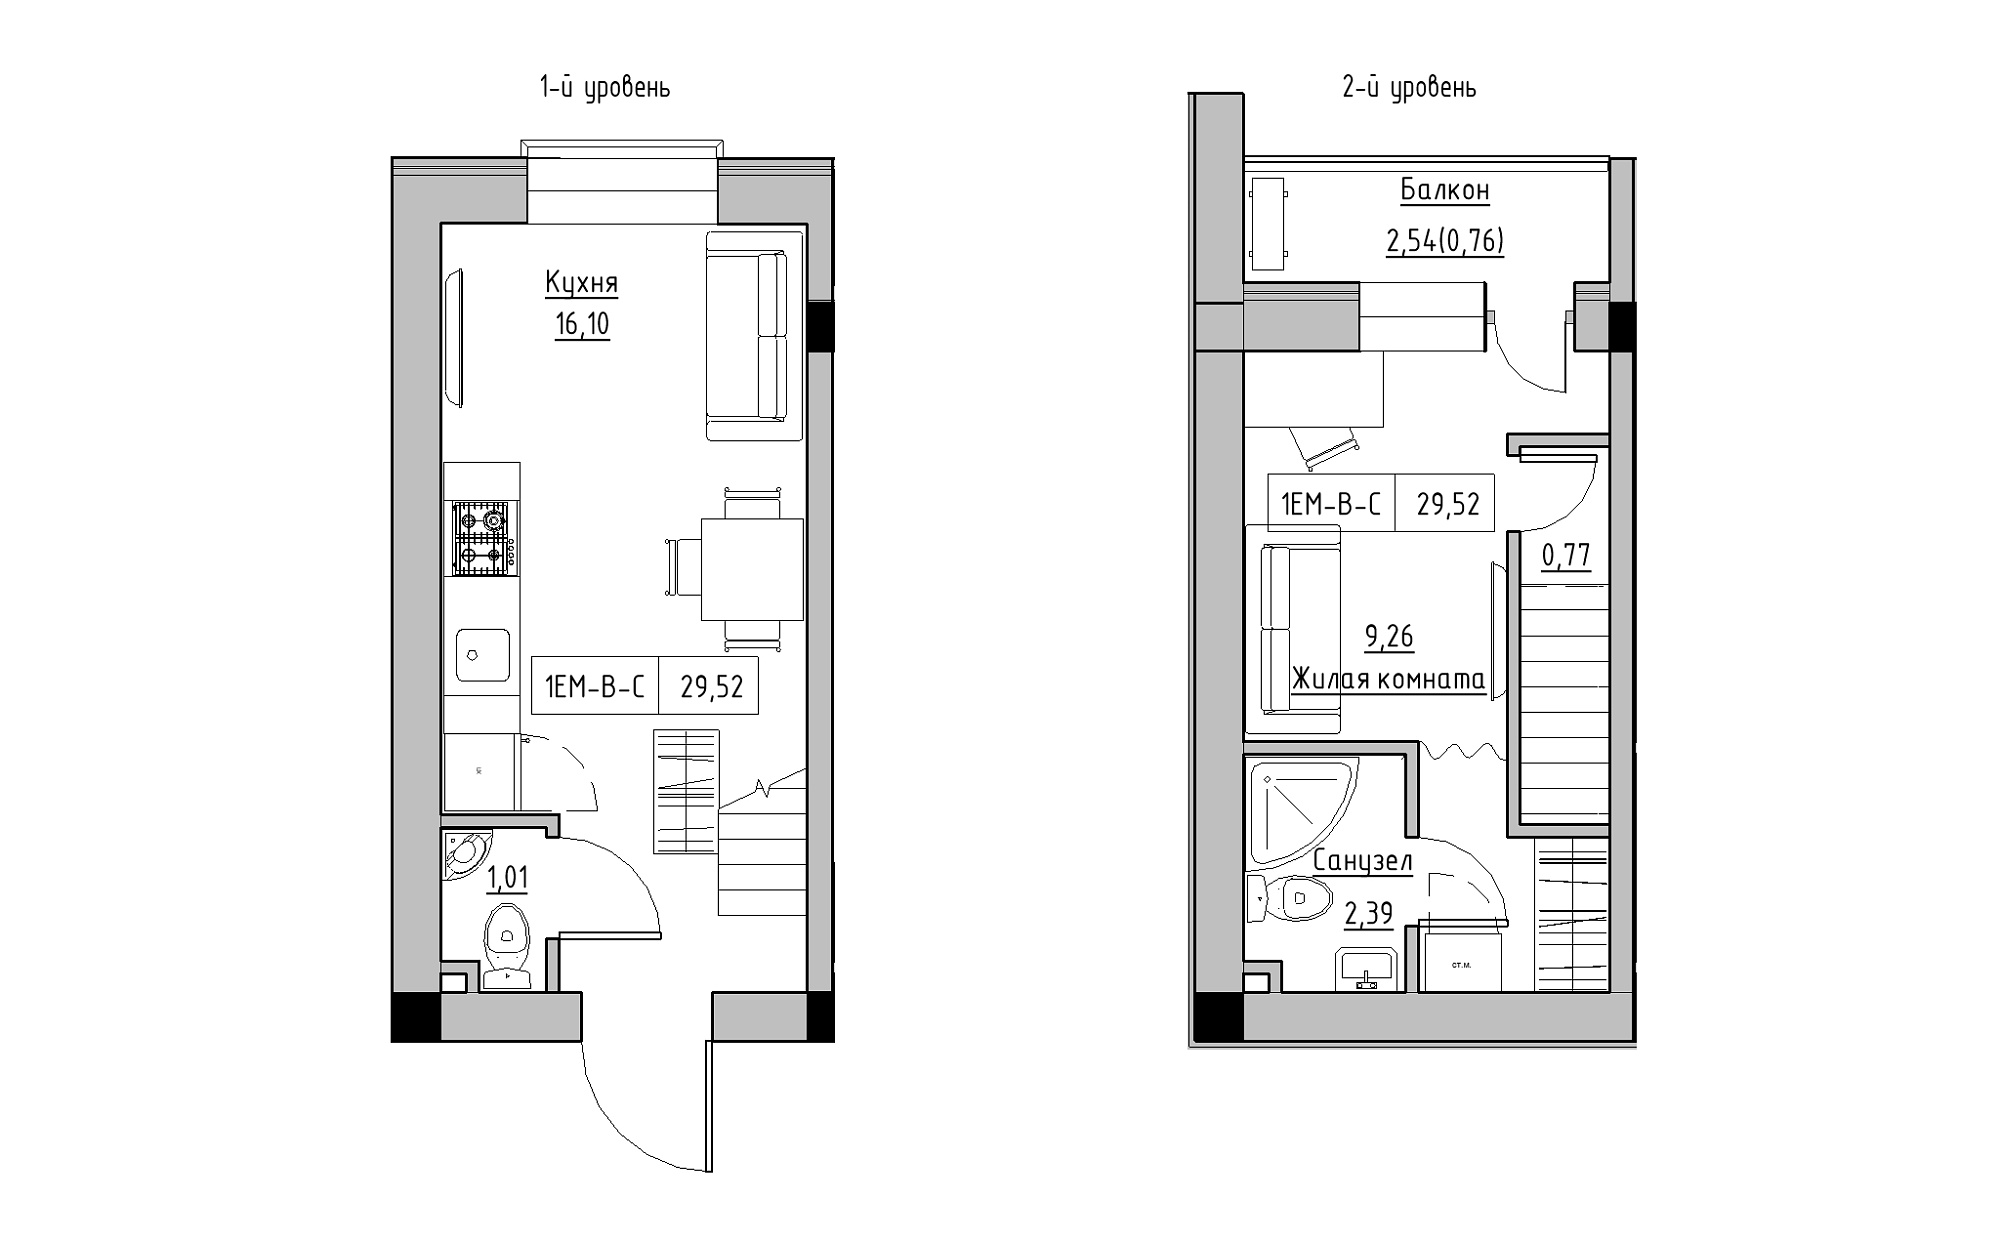 Planning 2-lvl flats area 29.52m2, KS-022-05/0009.